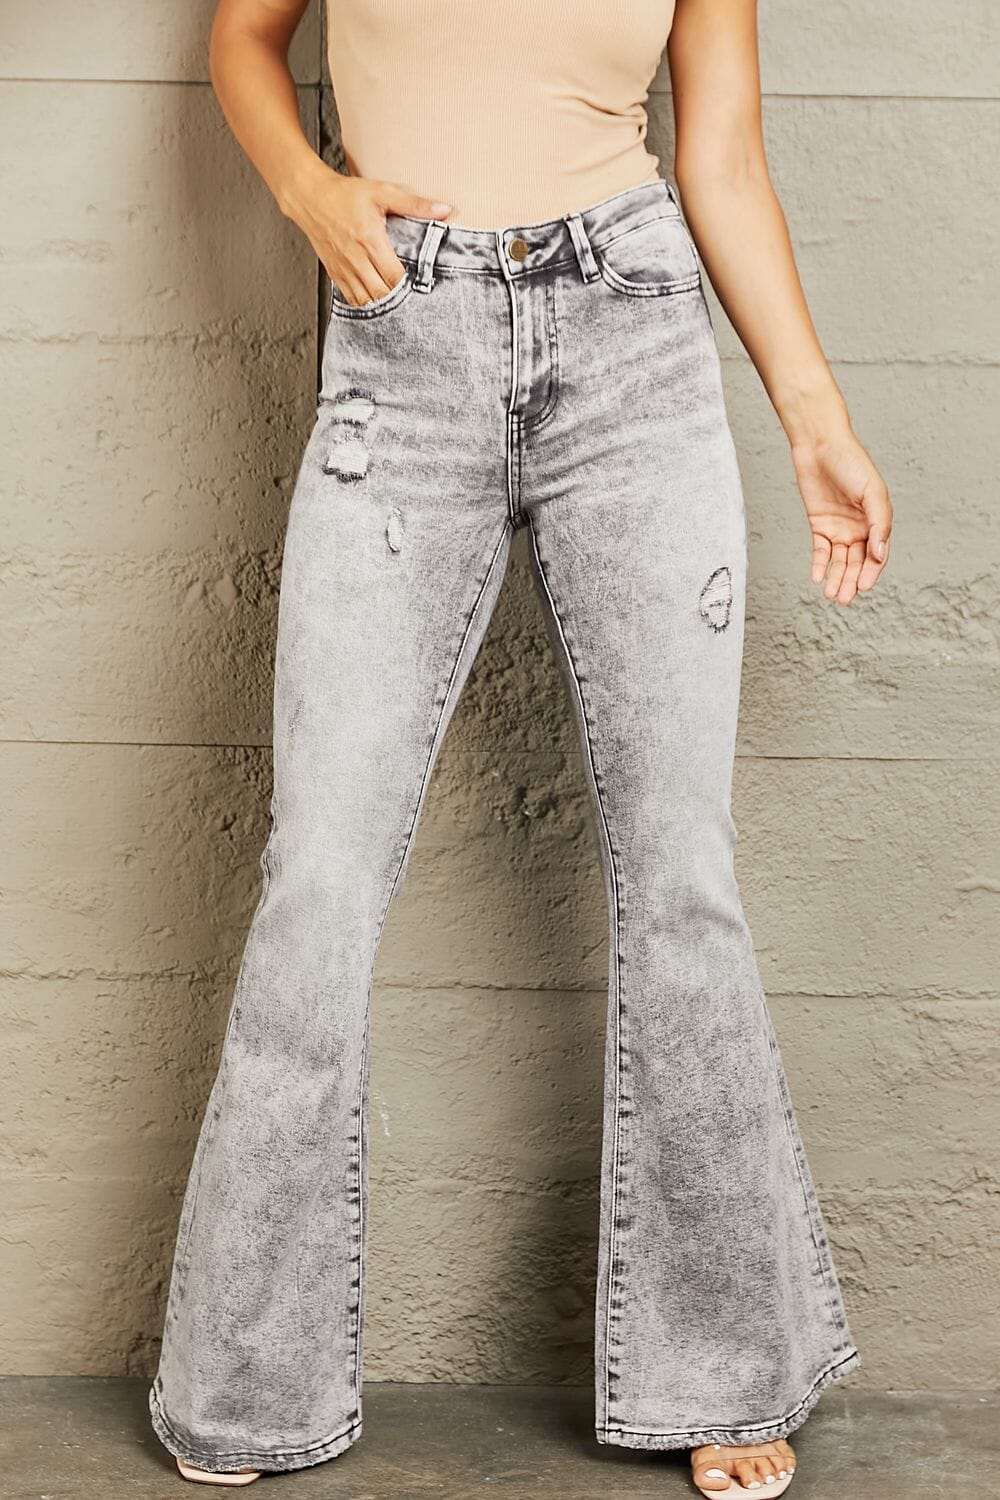 BAYEAS Charcoal Grey High Waisted Acid Wash Flare Jeans jeans jehouze 